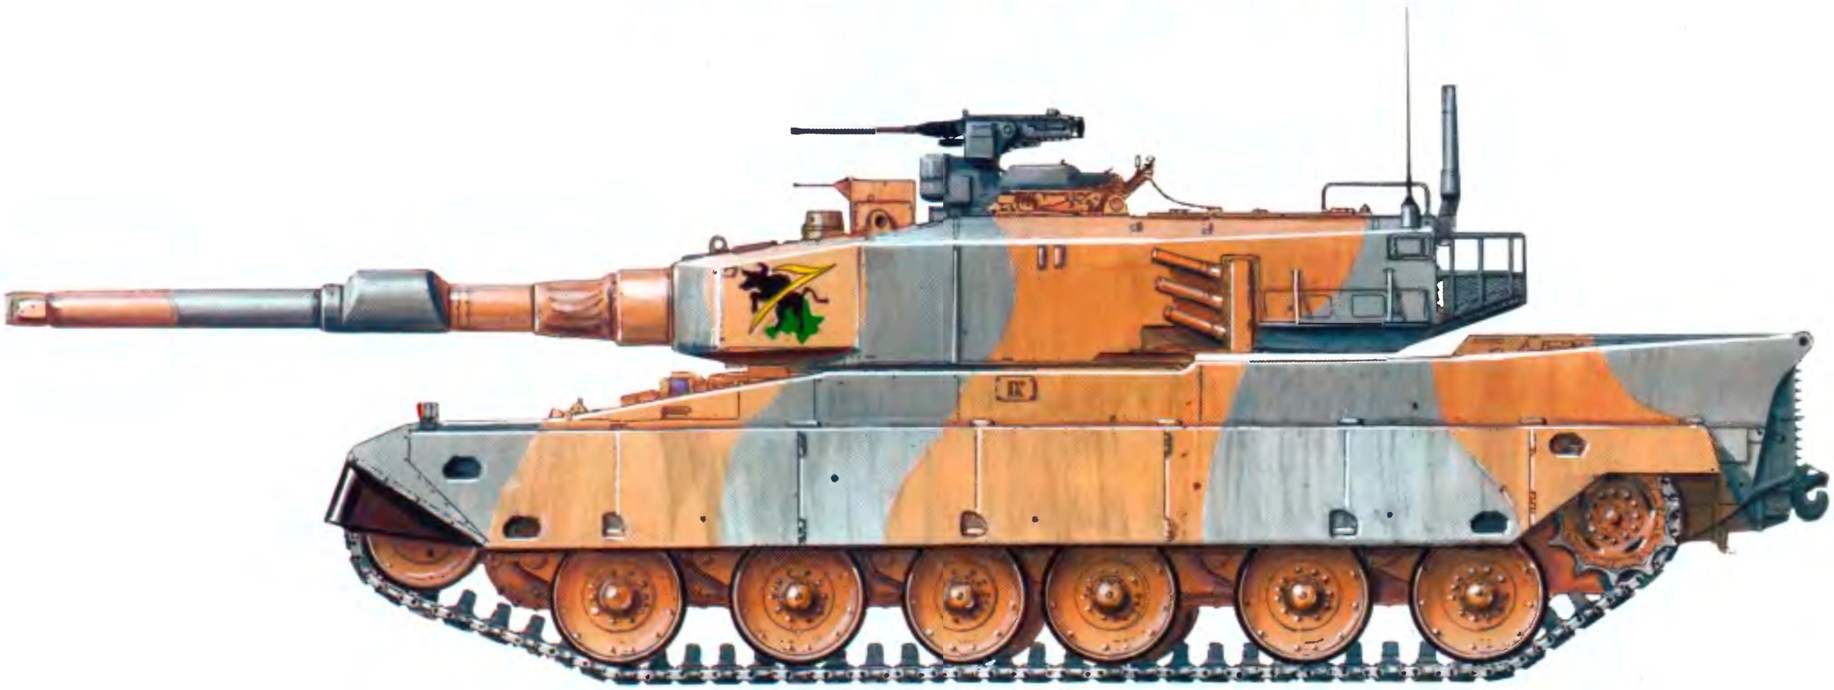 Основной боевой танк «90» из состава 7-й танковой дивизии во время учений на полигоне «Хагаси Фудзи». Зима 1999 года